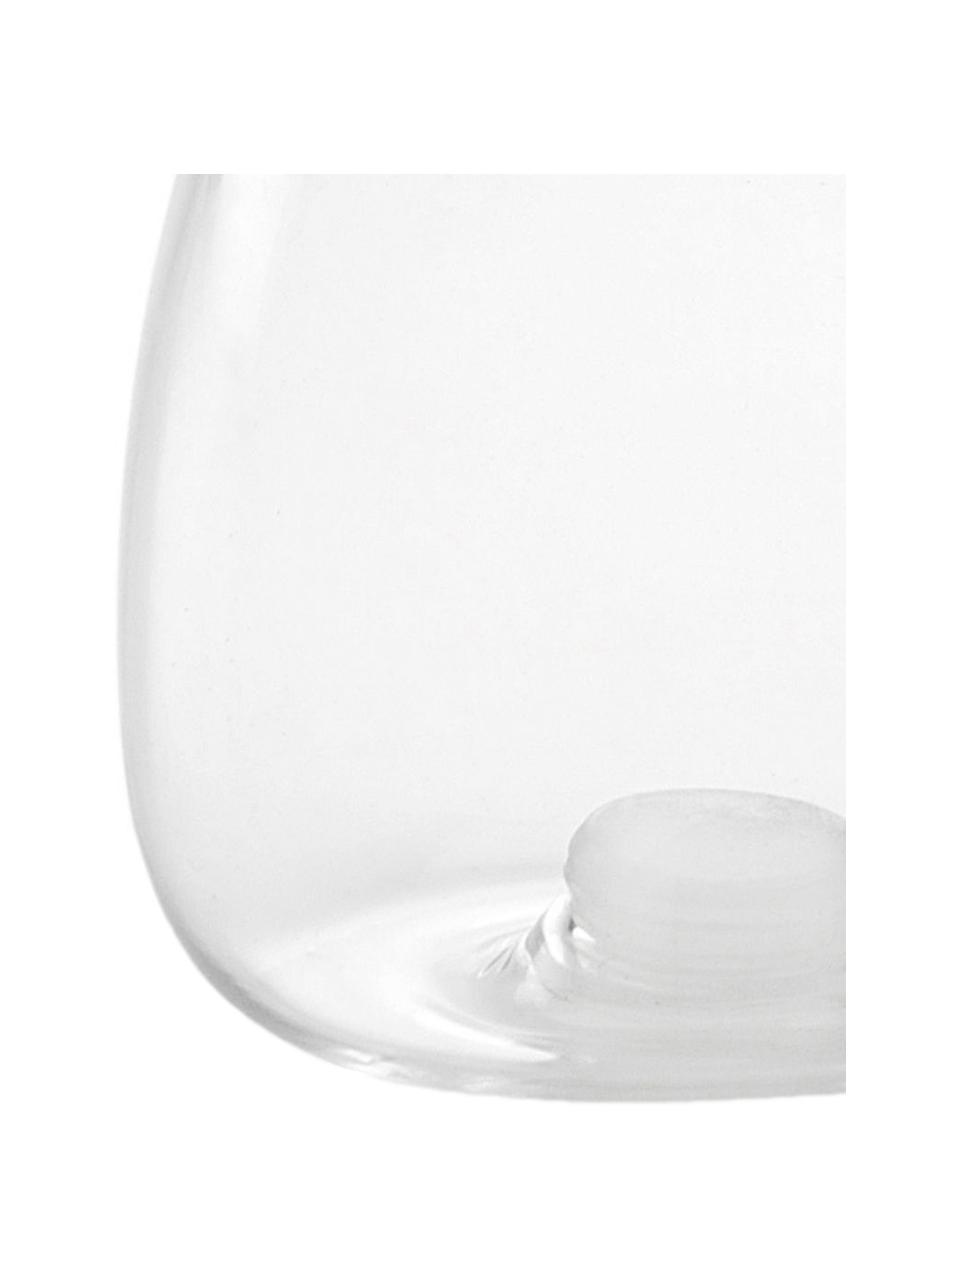 Salz- und Pfefferstreuer Shally, 2er-Set, Verschluss: Kunststoff, Transparent, Ø 6 x H 8 cm